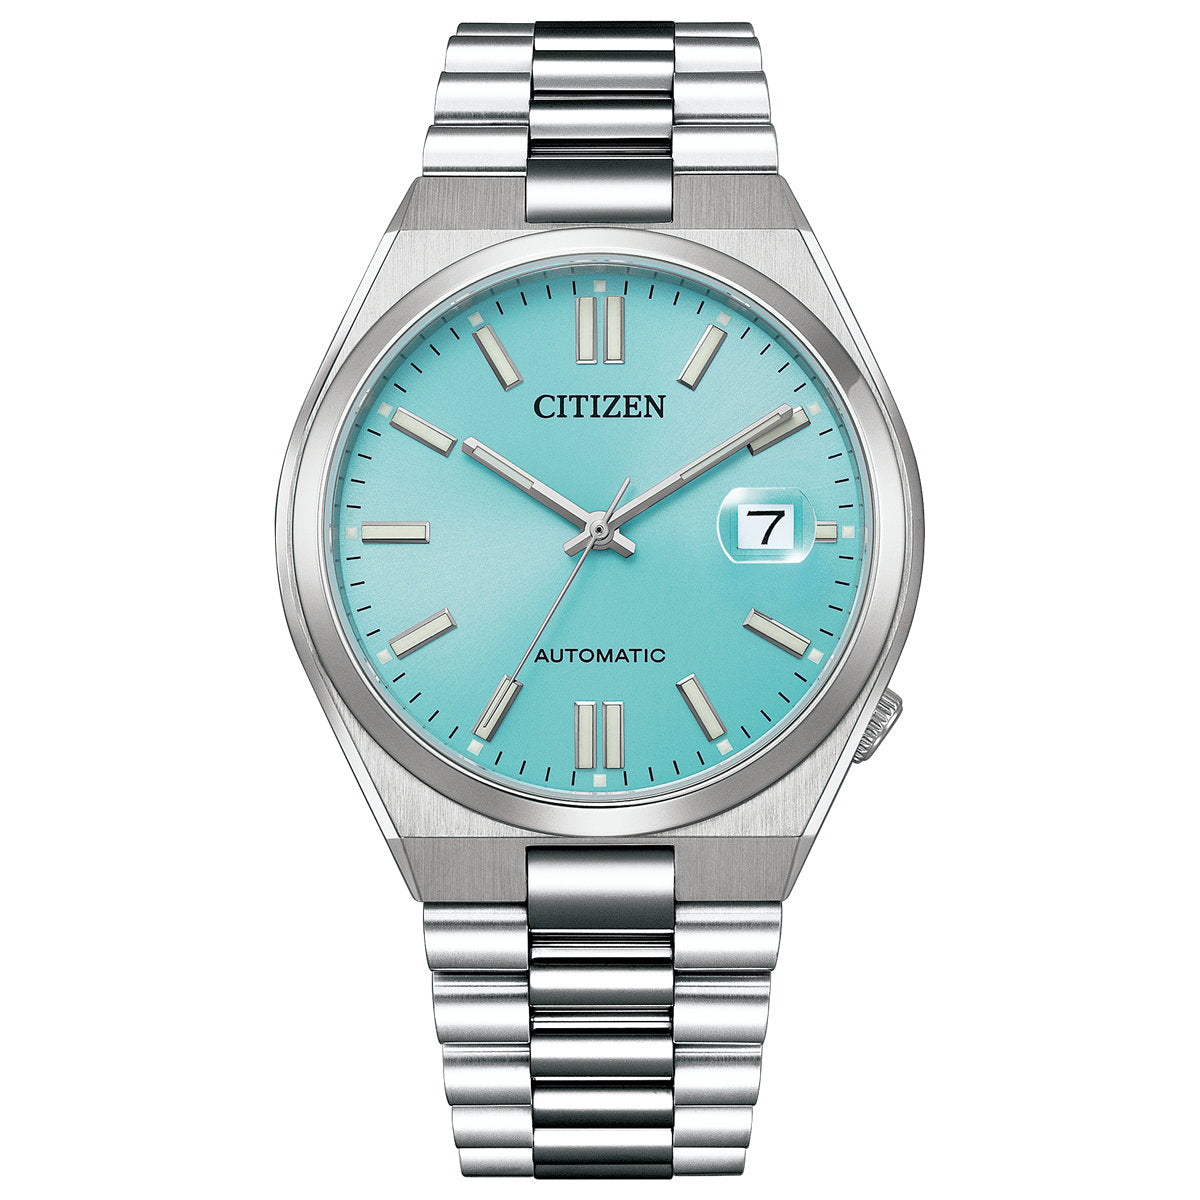 シチズンコレクション CITIZEN COLLECTION メカニカル 自動巻き 機械式 腕時計 メンズ NJ0151-88M TSUYOSA Collection